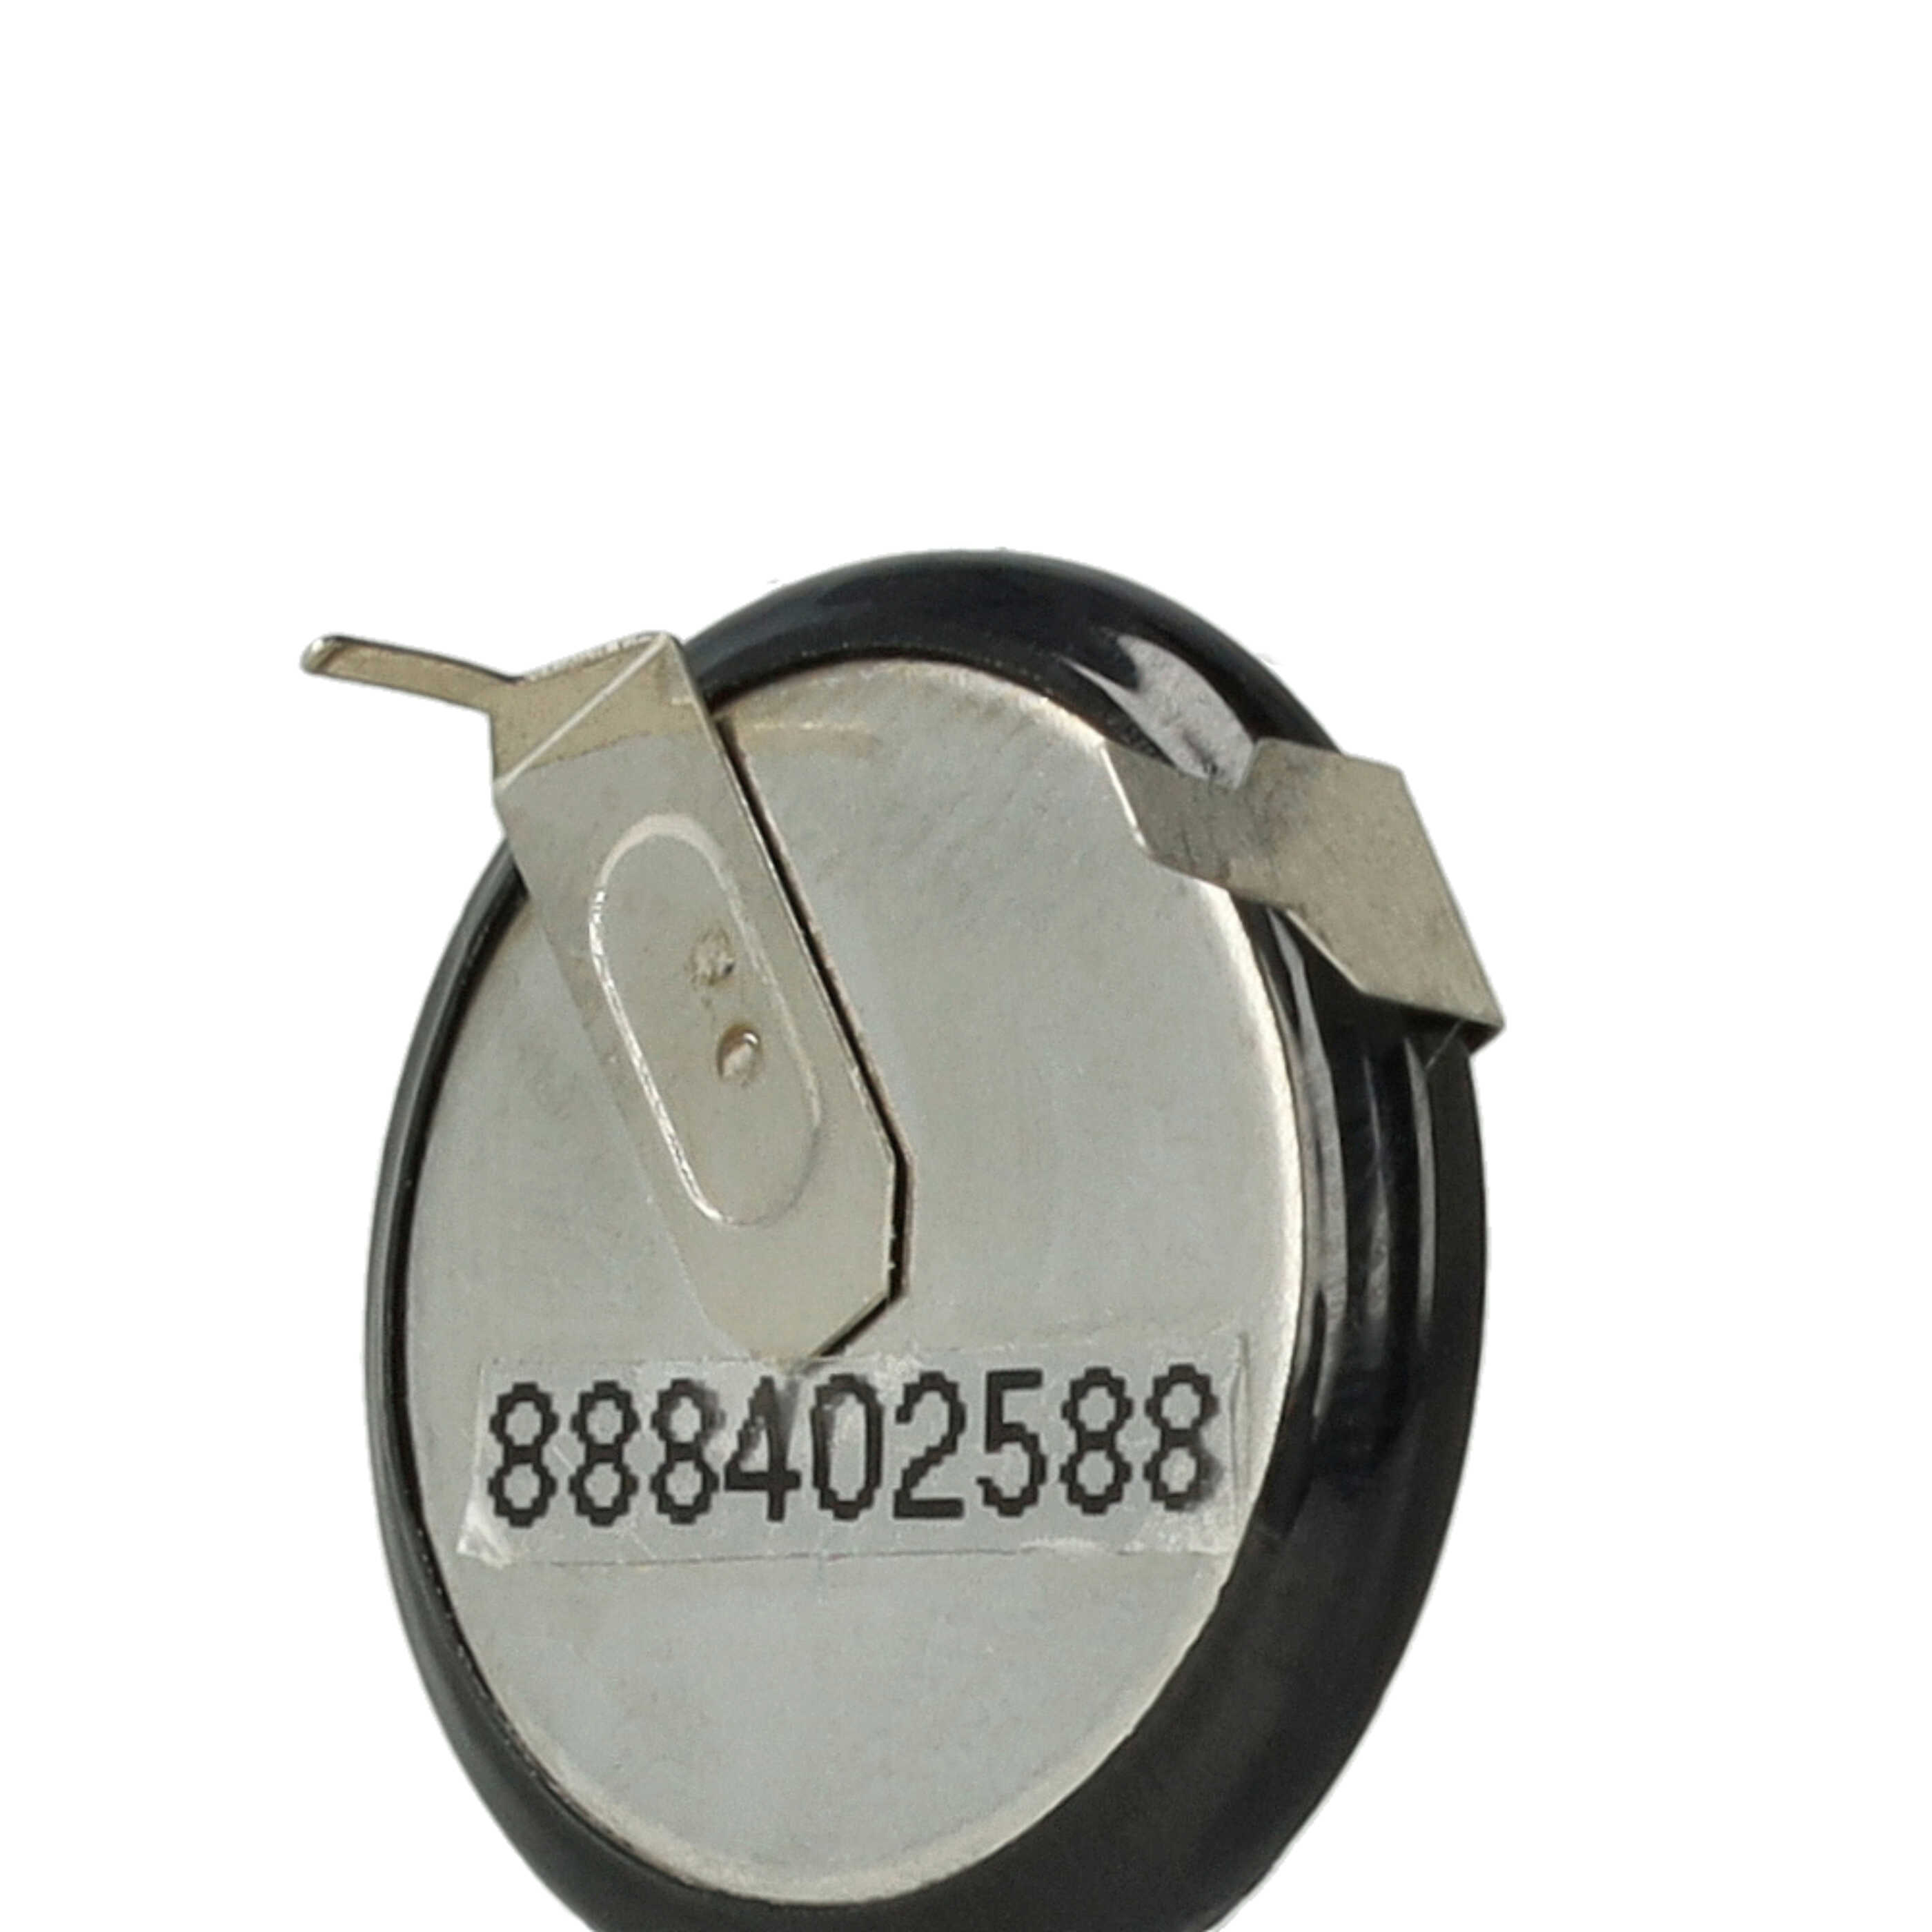 Autoschlüssel-Akku als Ersatz für VL2020, VL2025, LIR2025 - 20mAh 3,6V Li-Ion